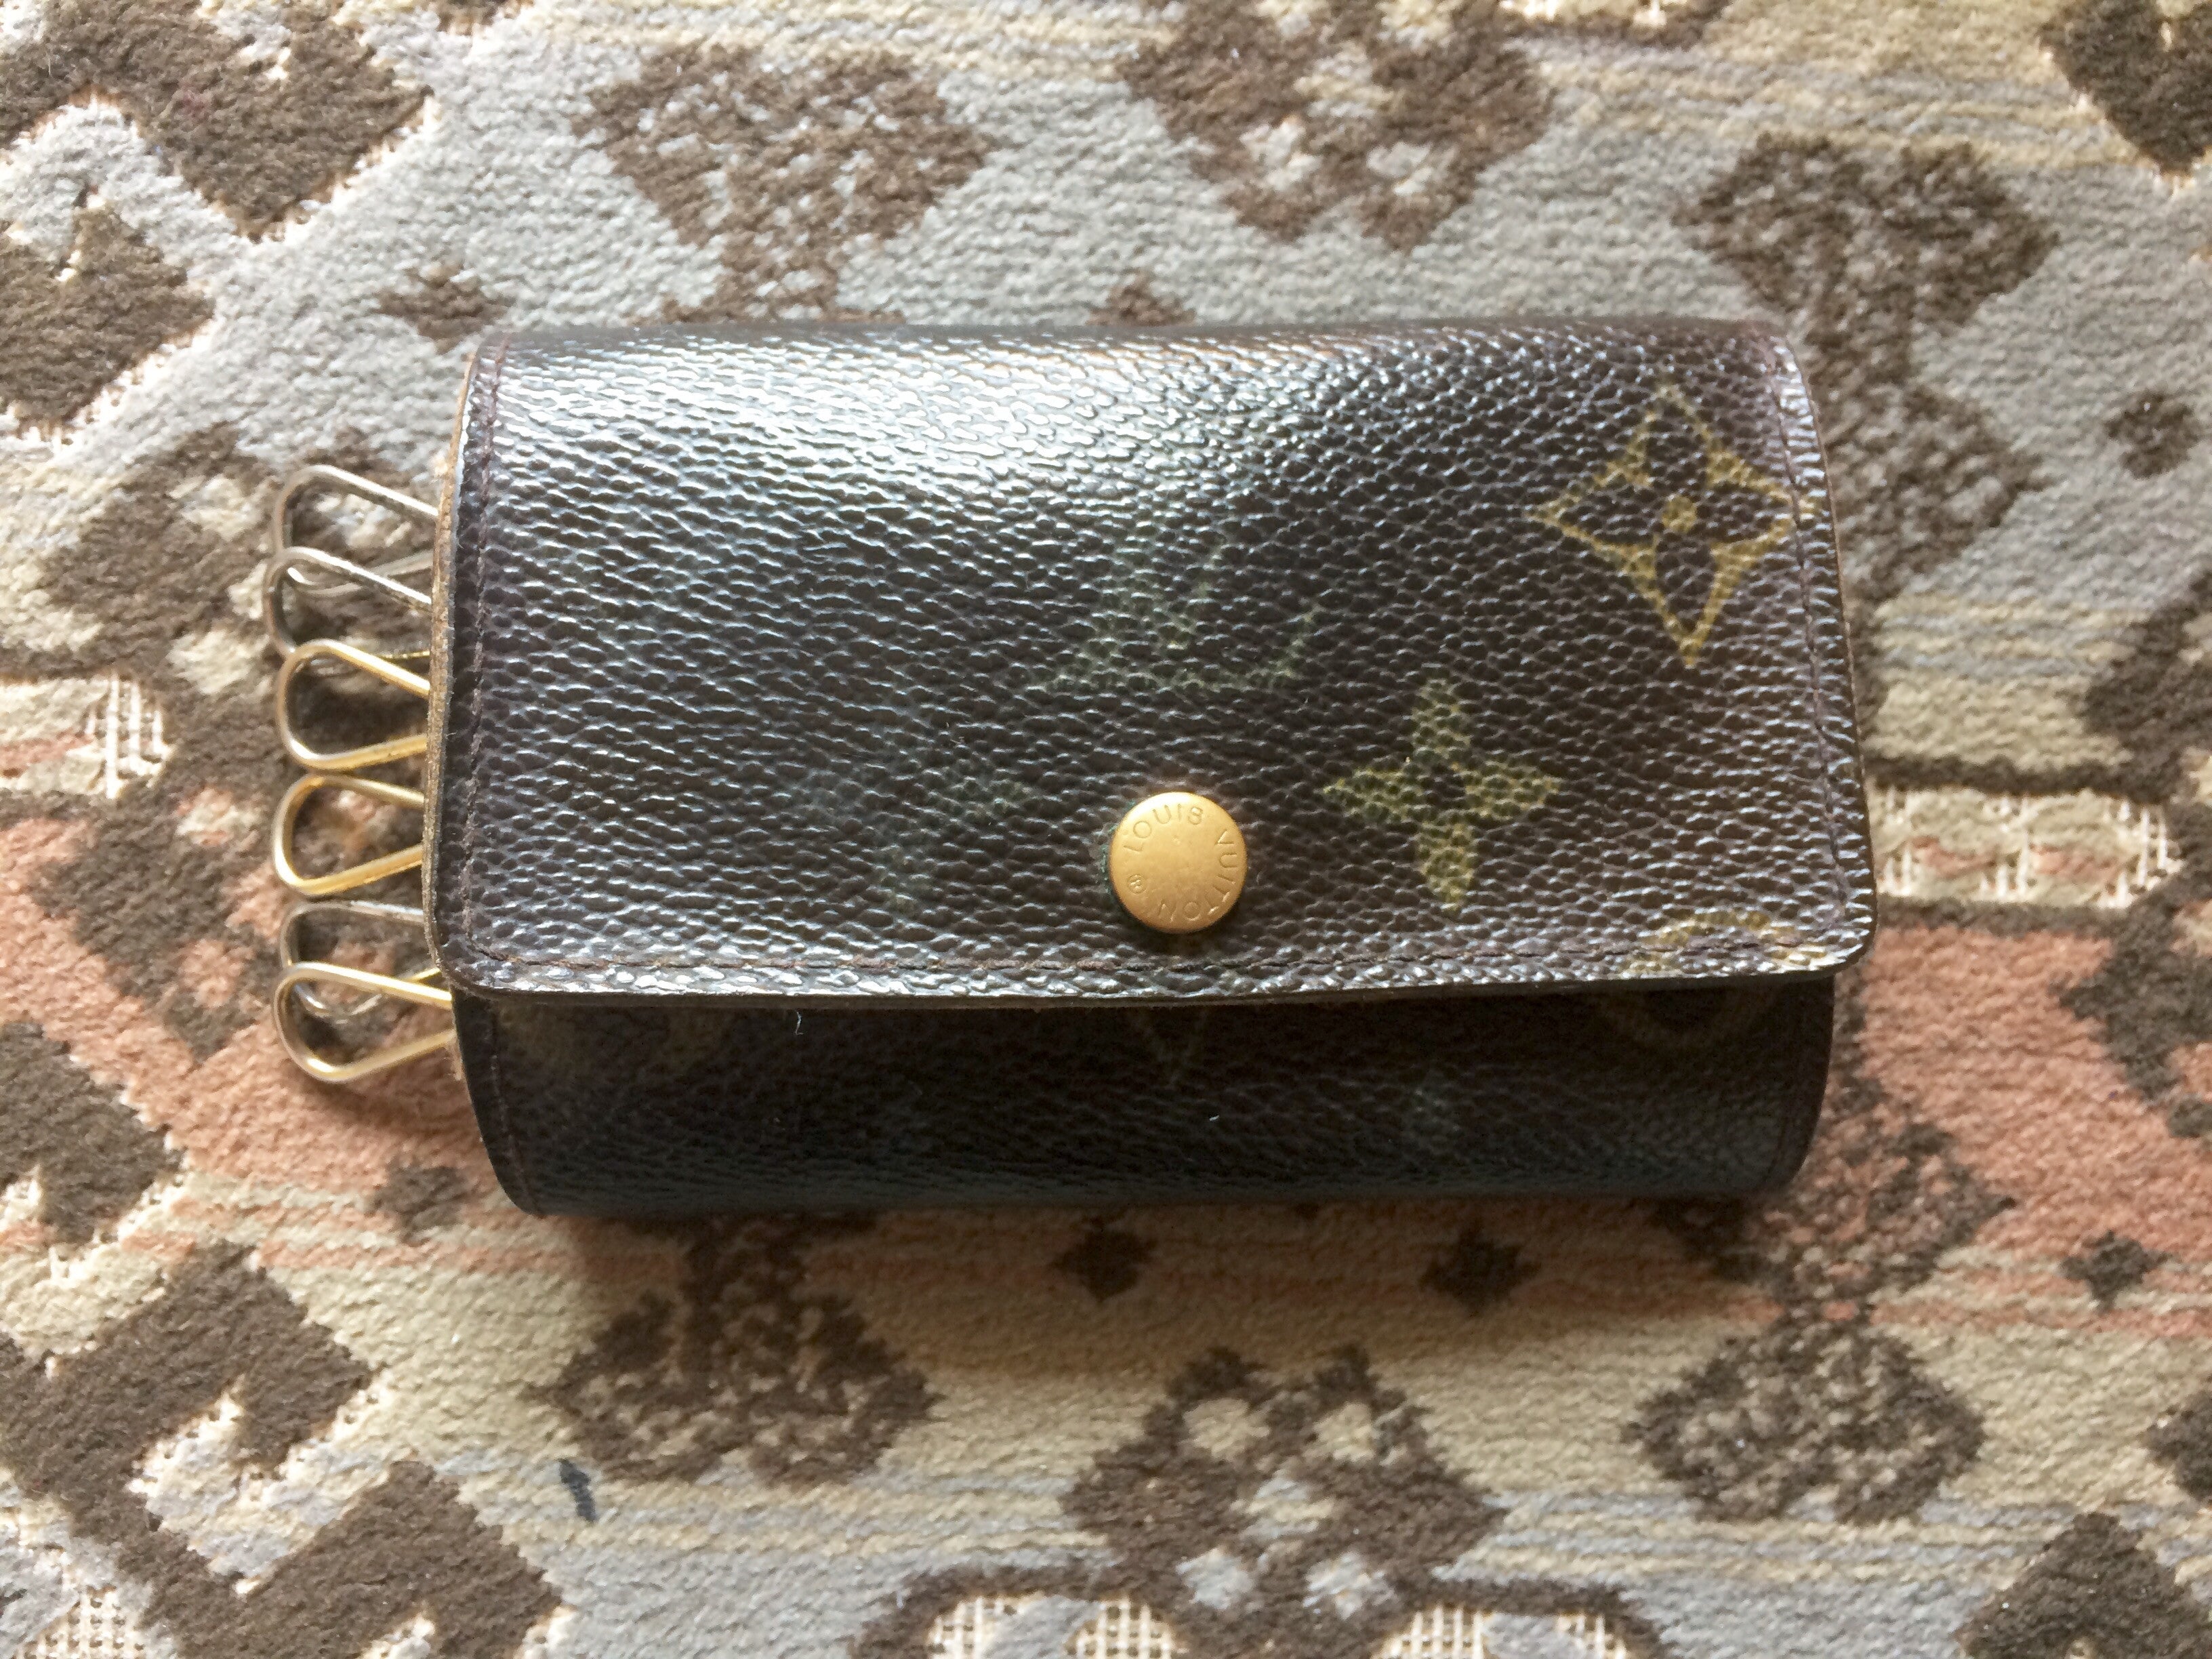 Vintage Louis Vuitton brown monogram key case. Classic unisex